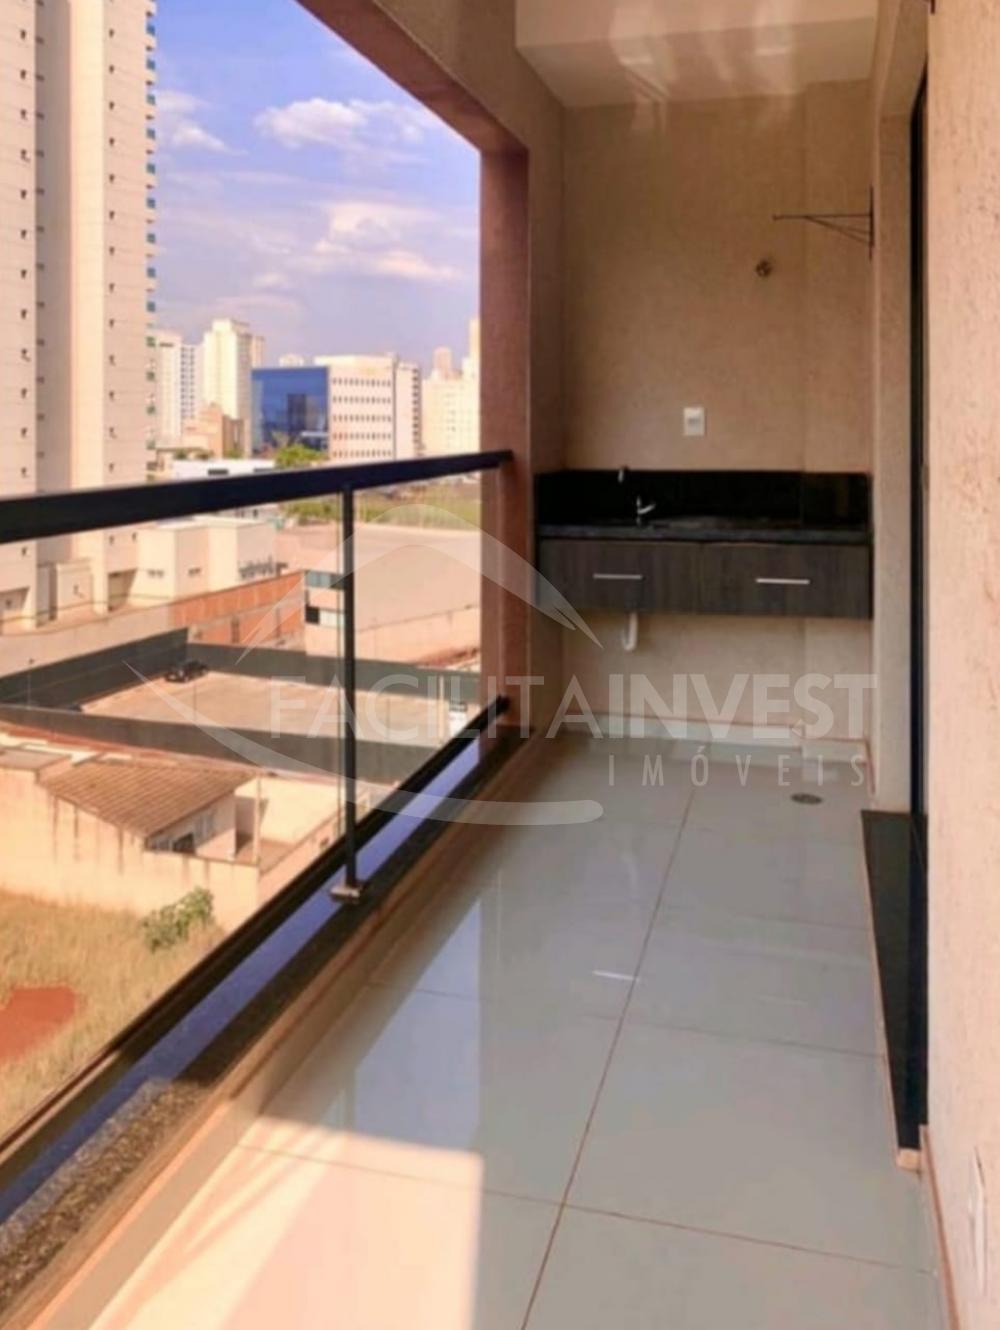 Comprar Apartamentos / Apartamento Mobiliado em Ribeirão Preto R$ 180.000,00 - Foto 1